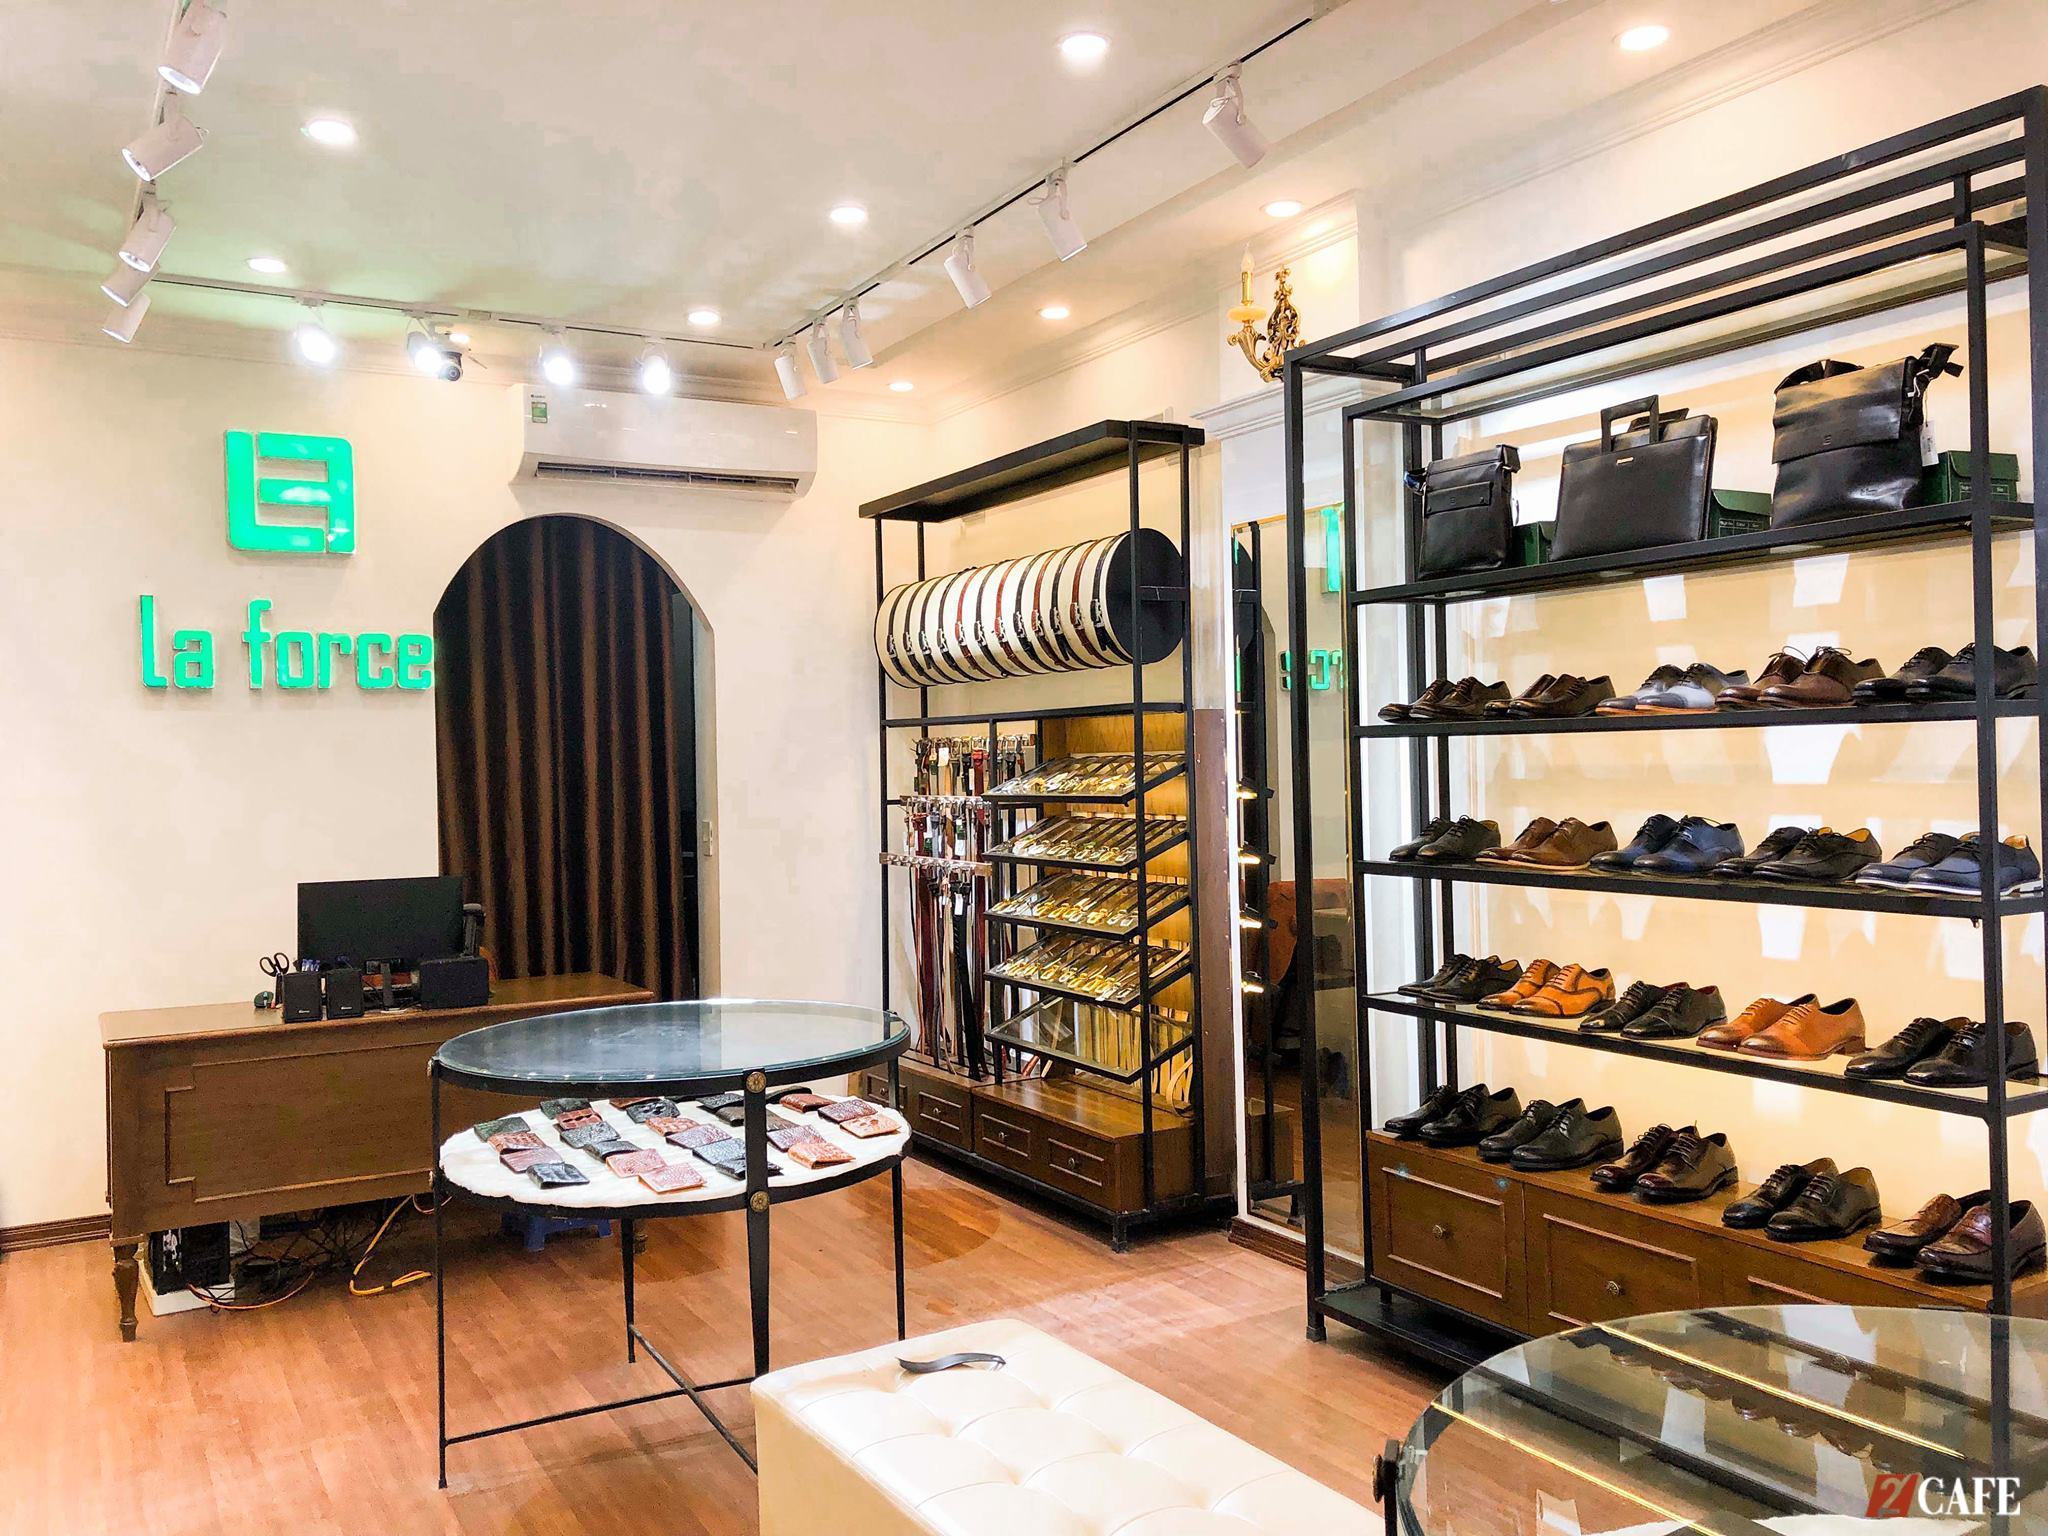 3 shop giày tây nam ở Quy Nhơn được bình chọn uy tín nhất